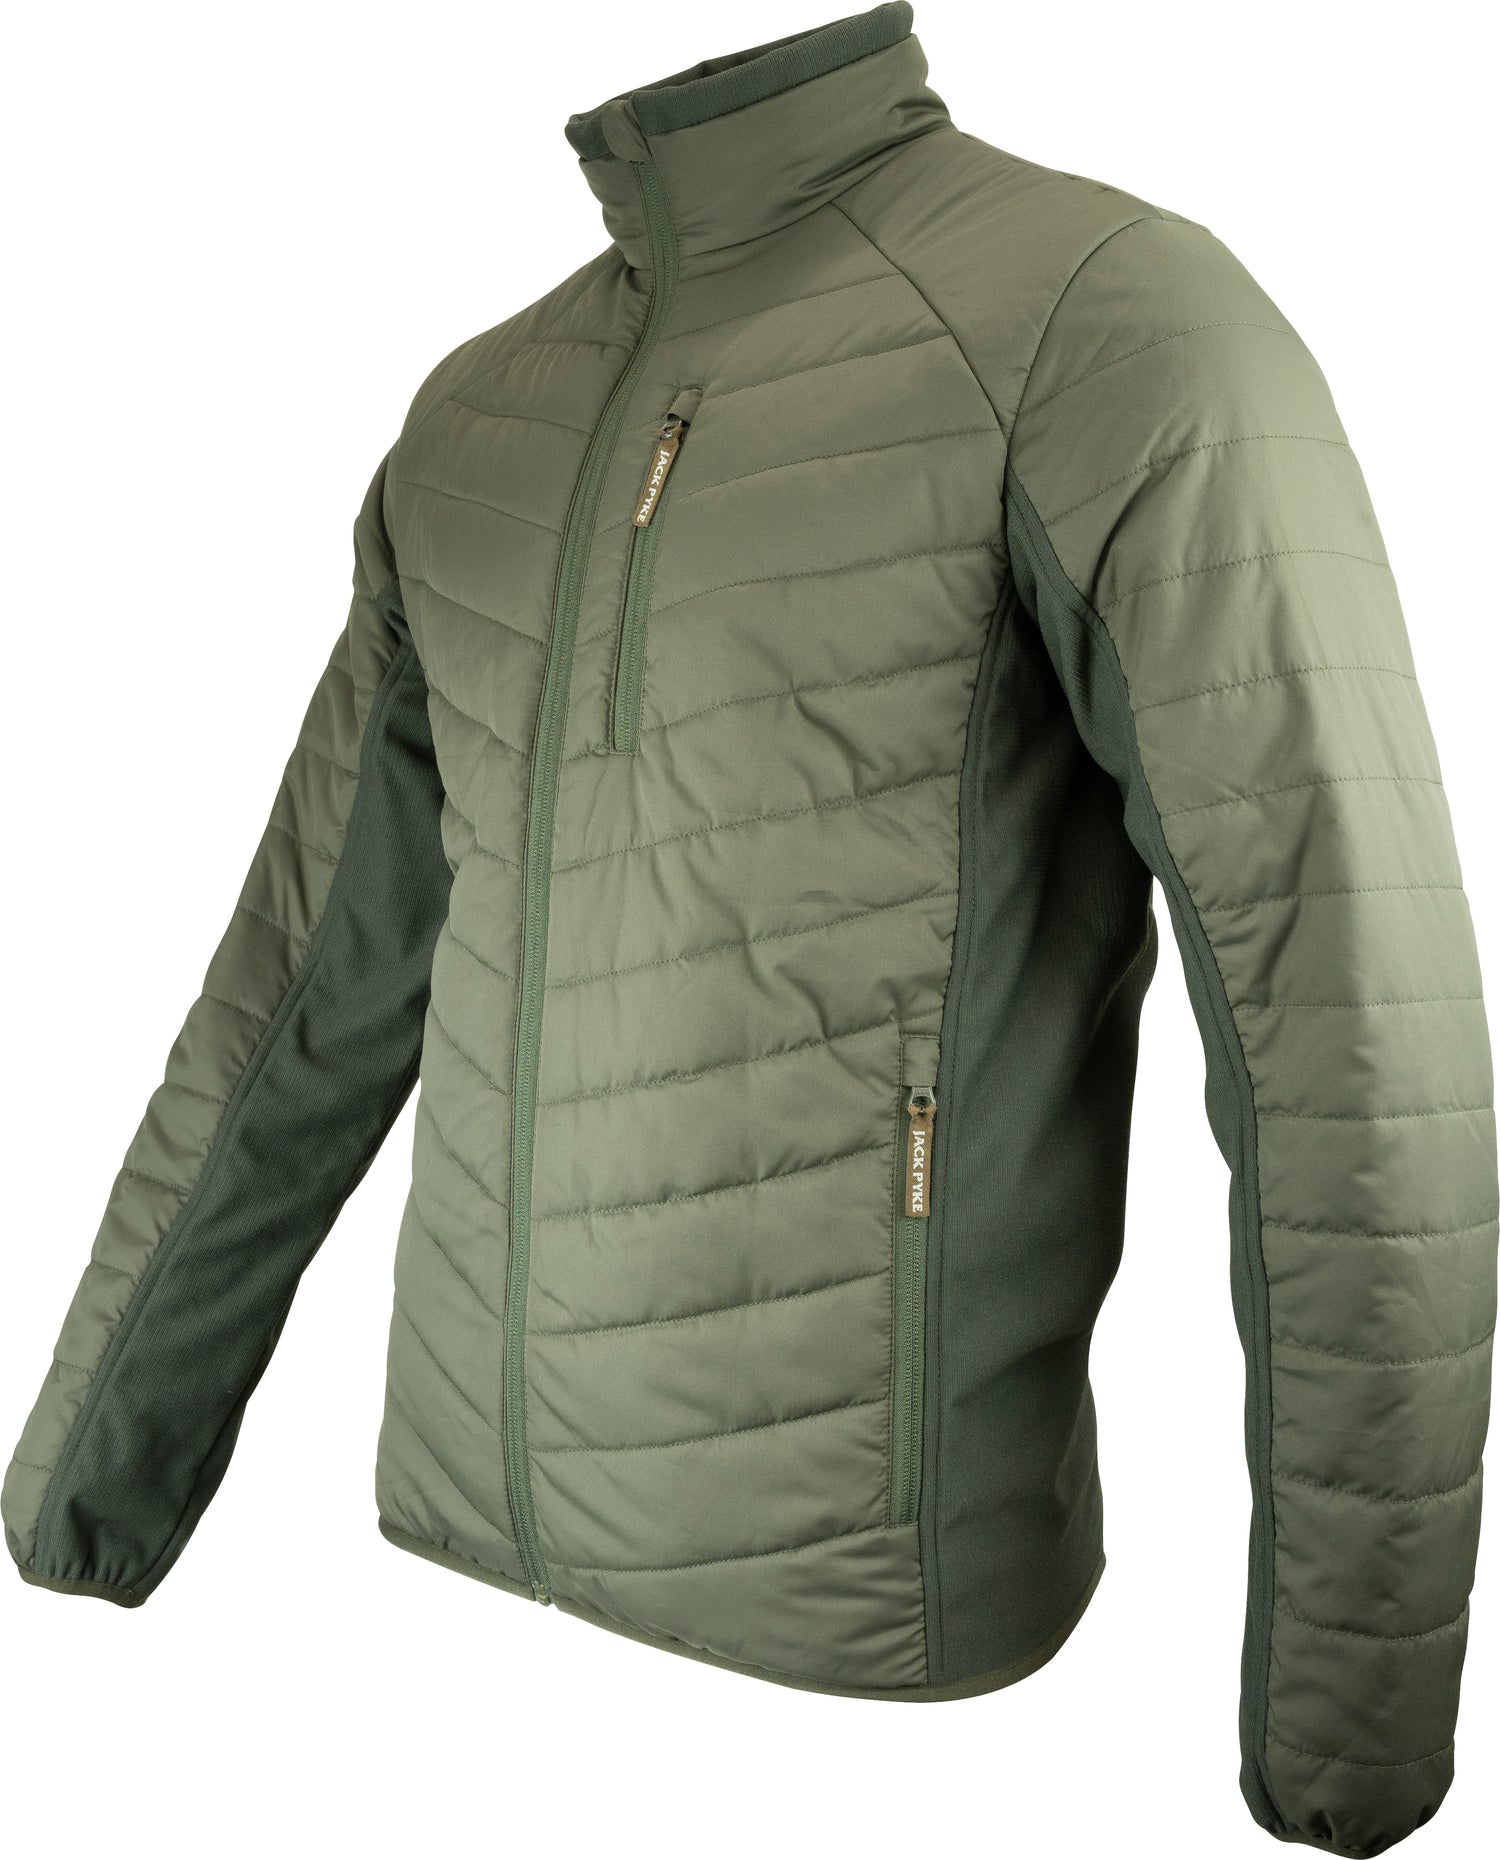 Quilted jacket with softshell inserts Jack Pyke Hybrid Jacket